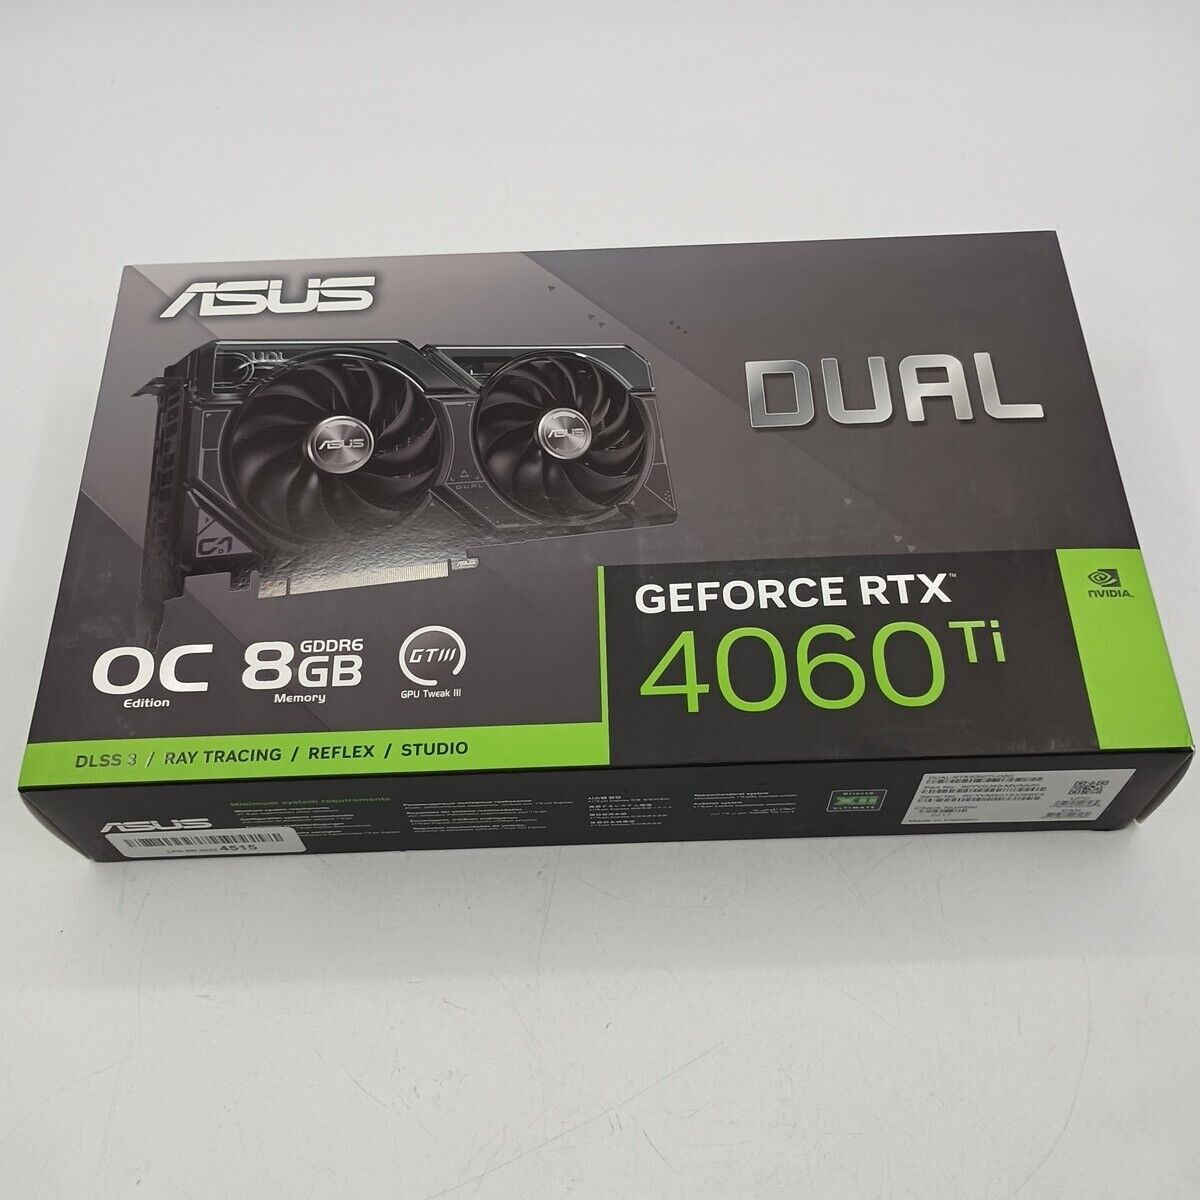 ASUS Dual GeForce RTX 4060 Ti OC Edition 8GB GDDR6 PCIe 4.0 GDDR6 DLSS 3 GPU III